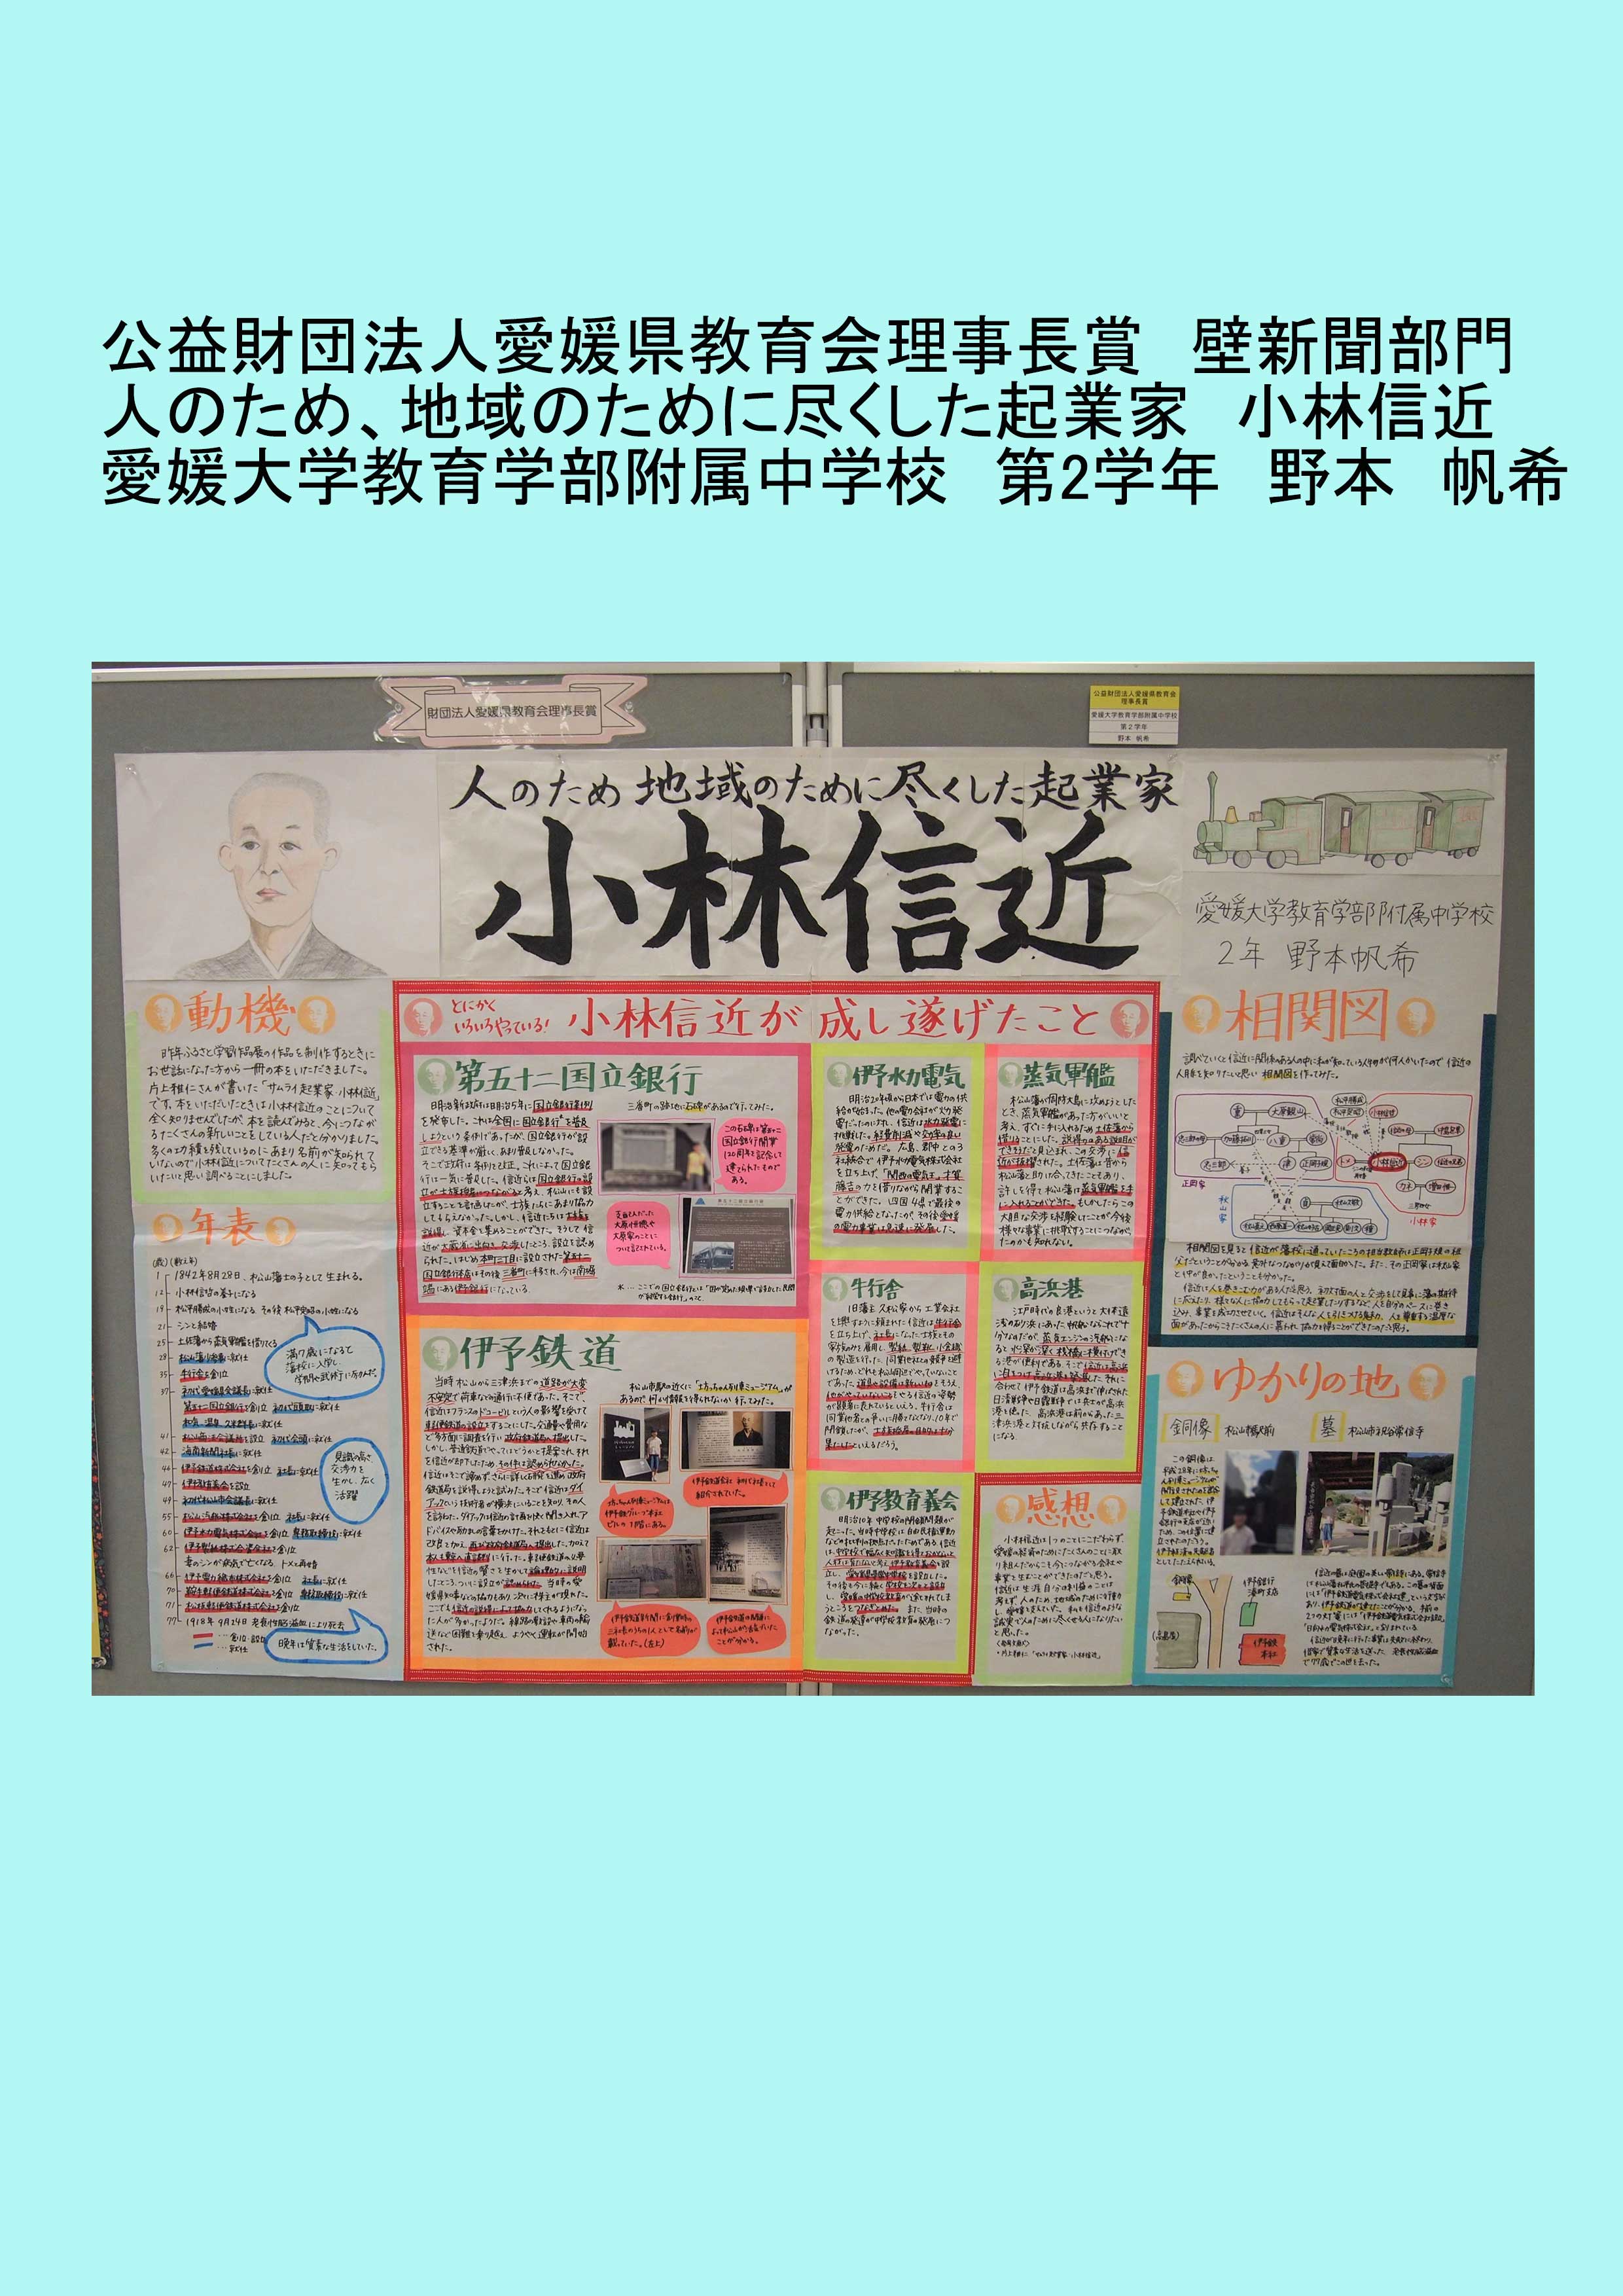 ふるさと学習作品展 愛媛県生涯学習センター